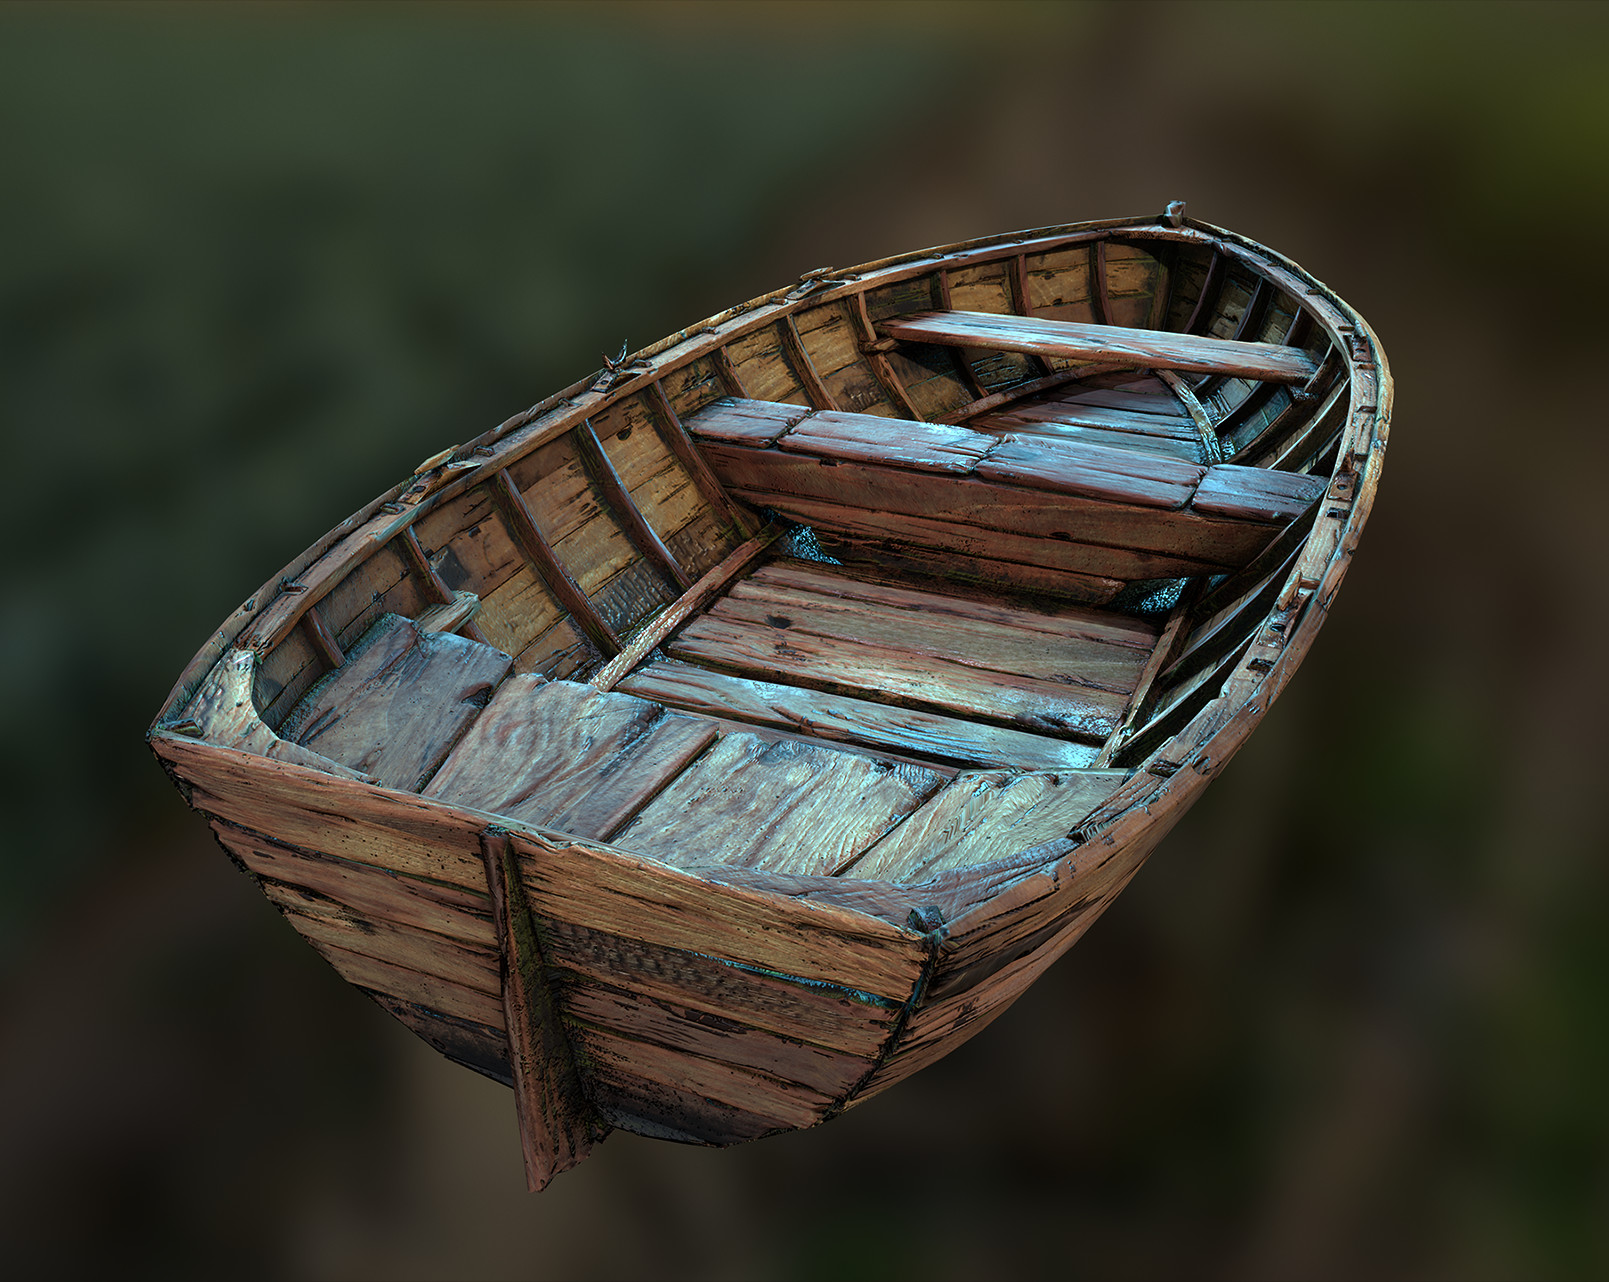 ArtStation - Old Wooden Boat, Damian Kwiatkowski